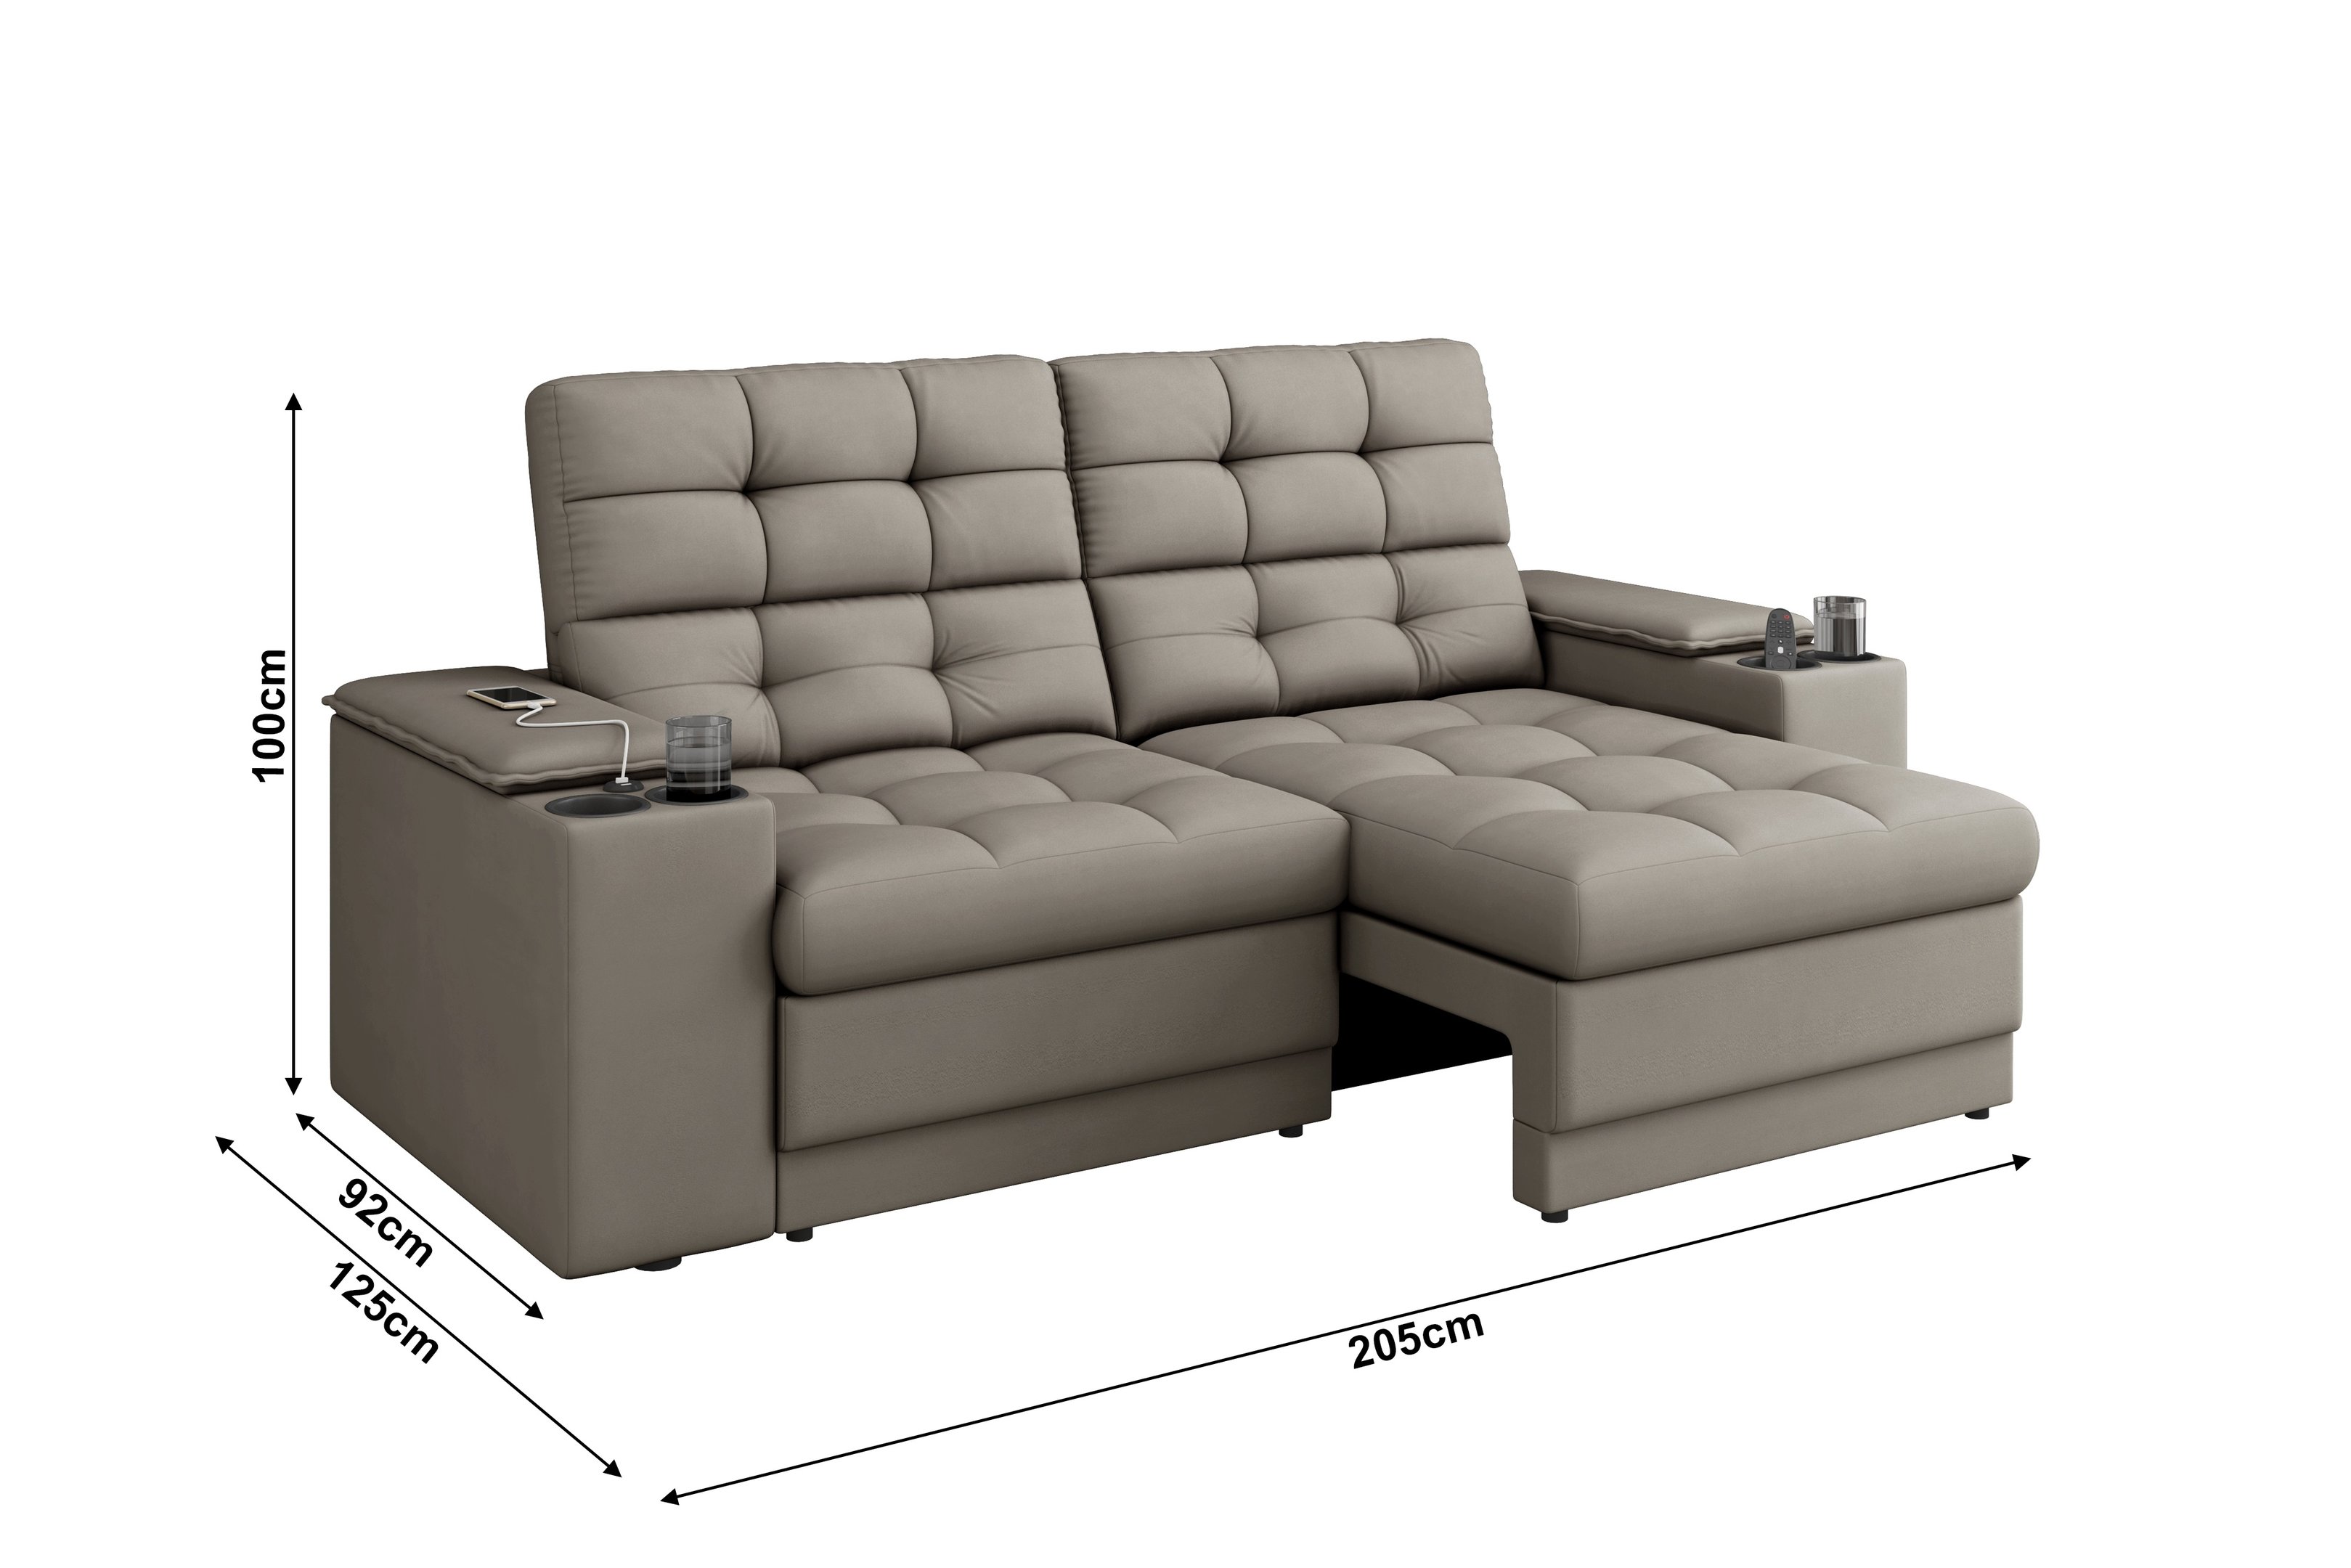 Sofá Confort Premium 2,05m Assento Retrátil/reclinável Porta Copos e Usb Suede Capuccino - Xflex - 2